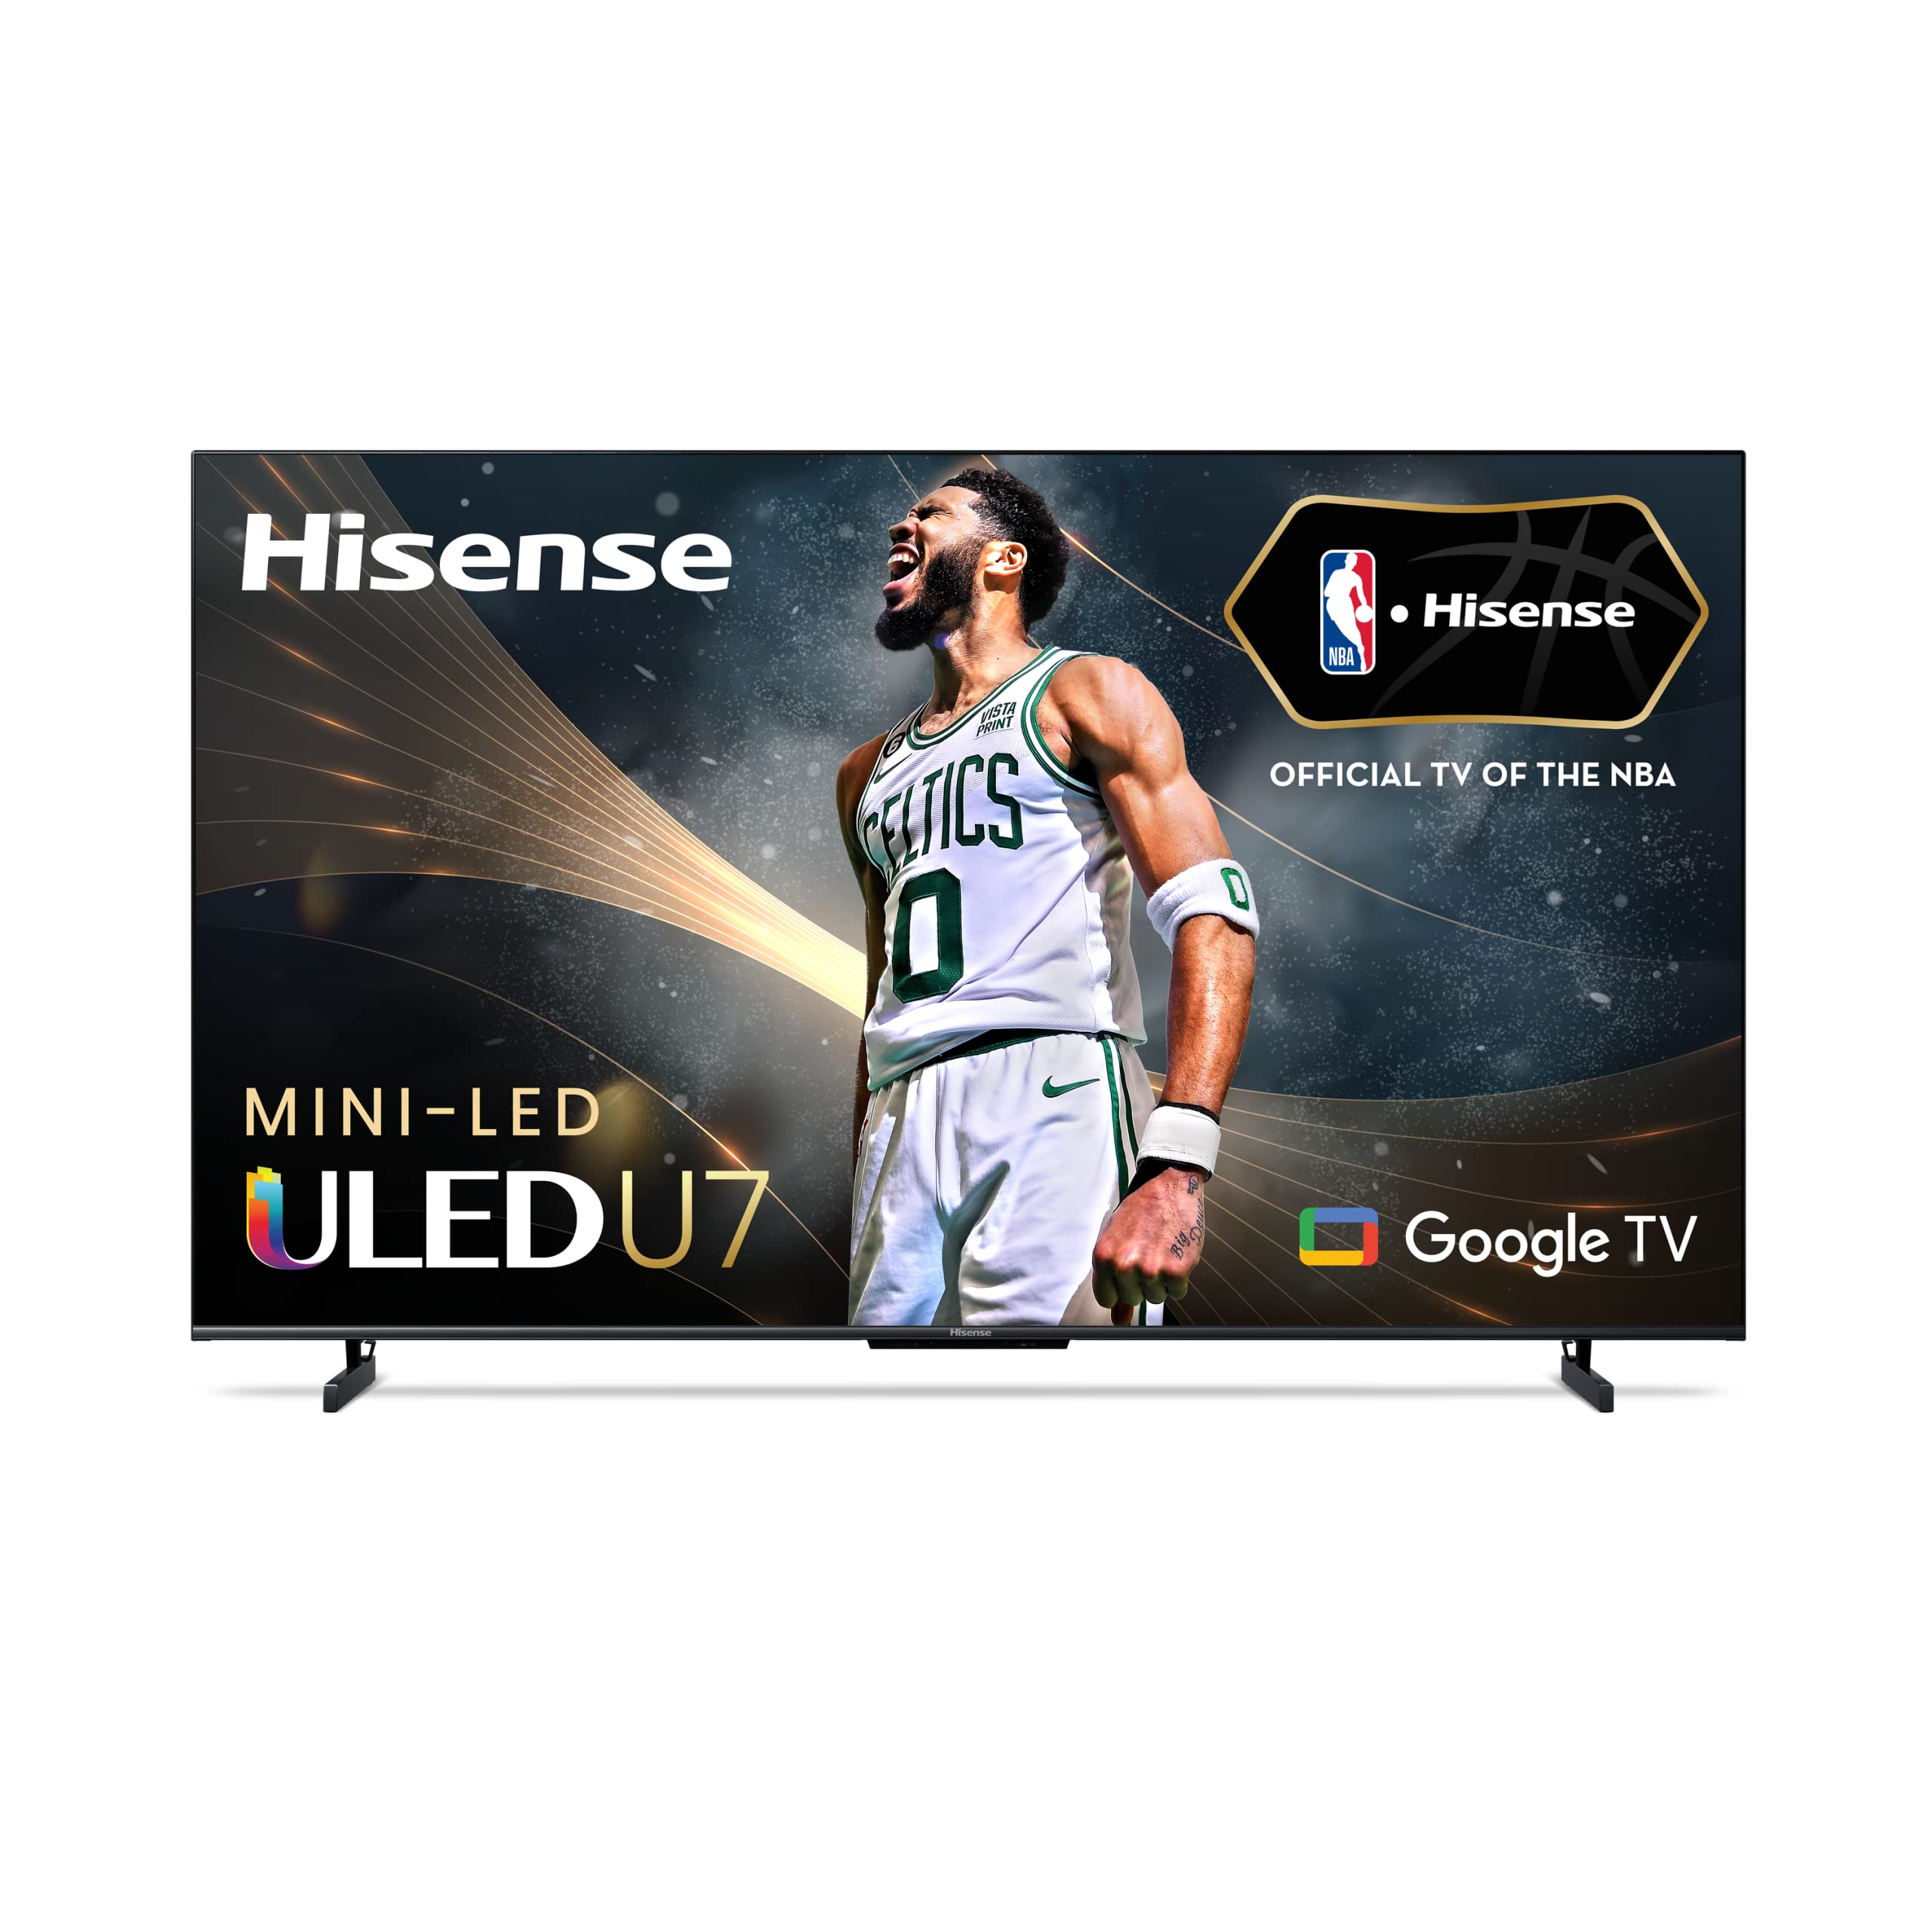 65" Hisense Class U7K Series 144Hz Mini-LED 4K Google Smart TV $730 + Free Shipping